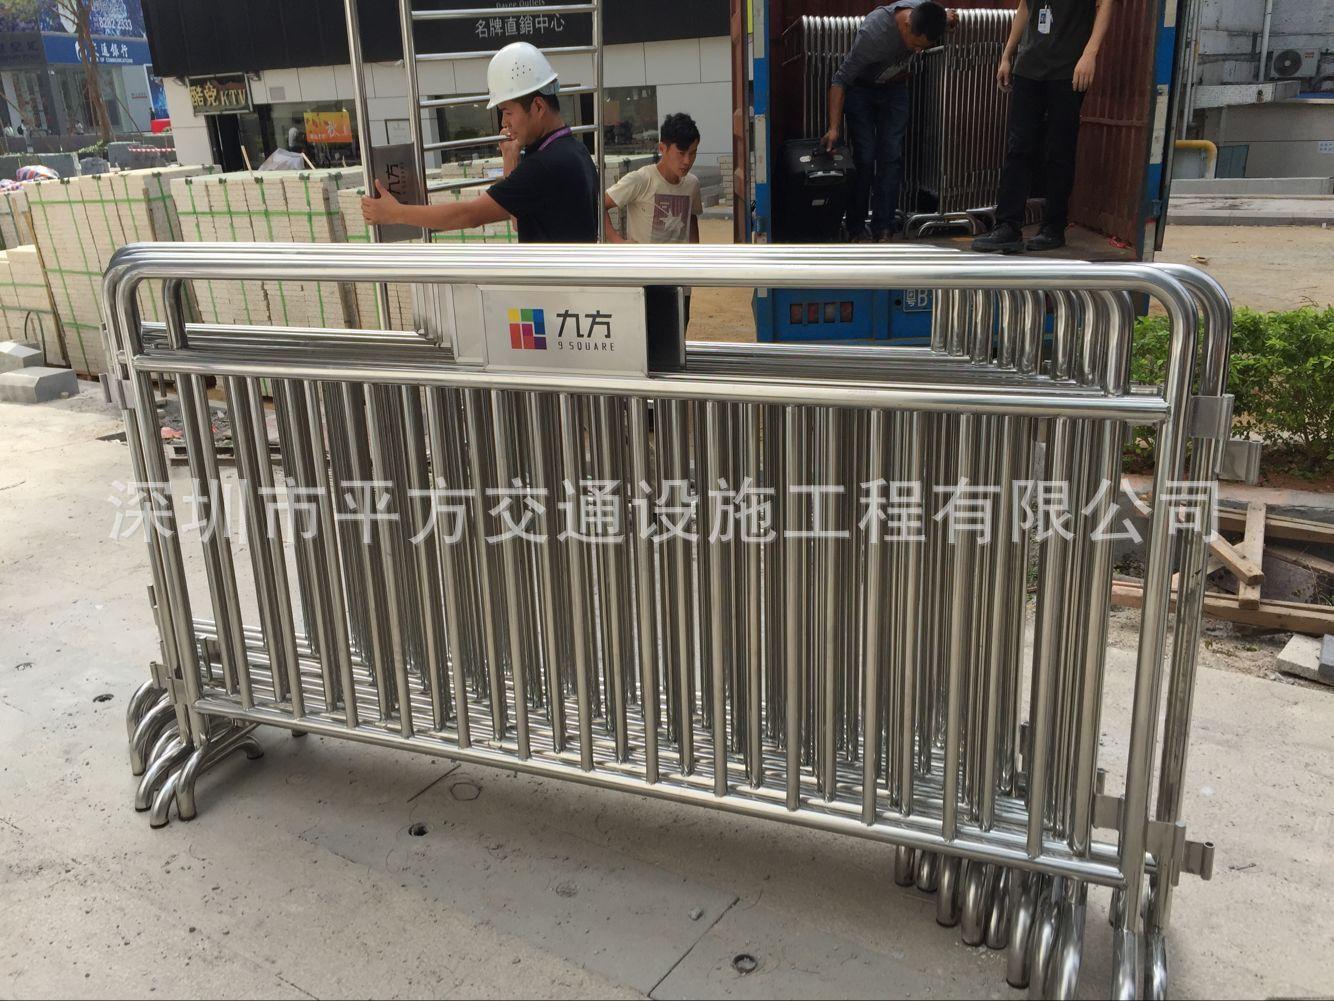 深圳城市道路施工护栏